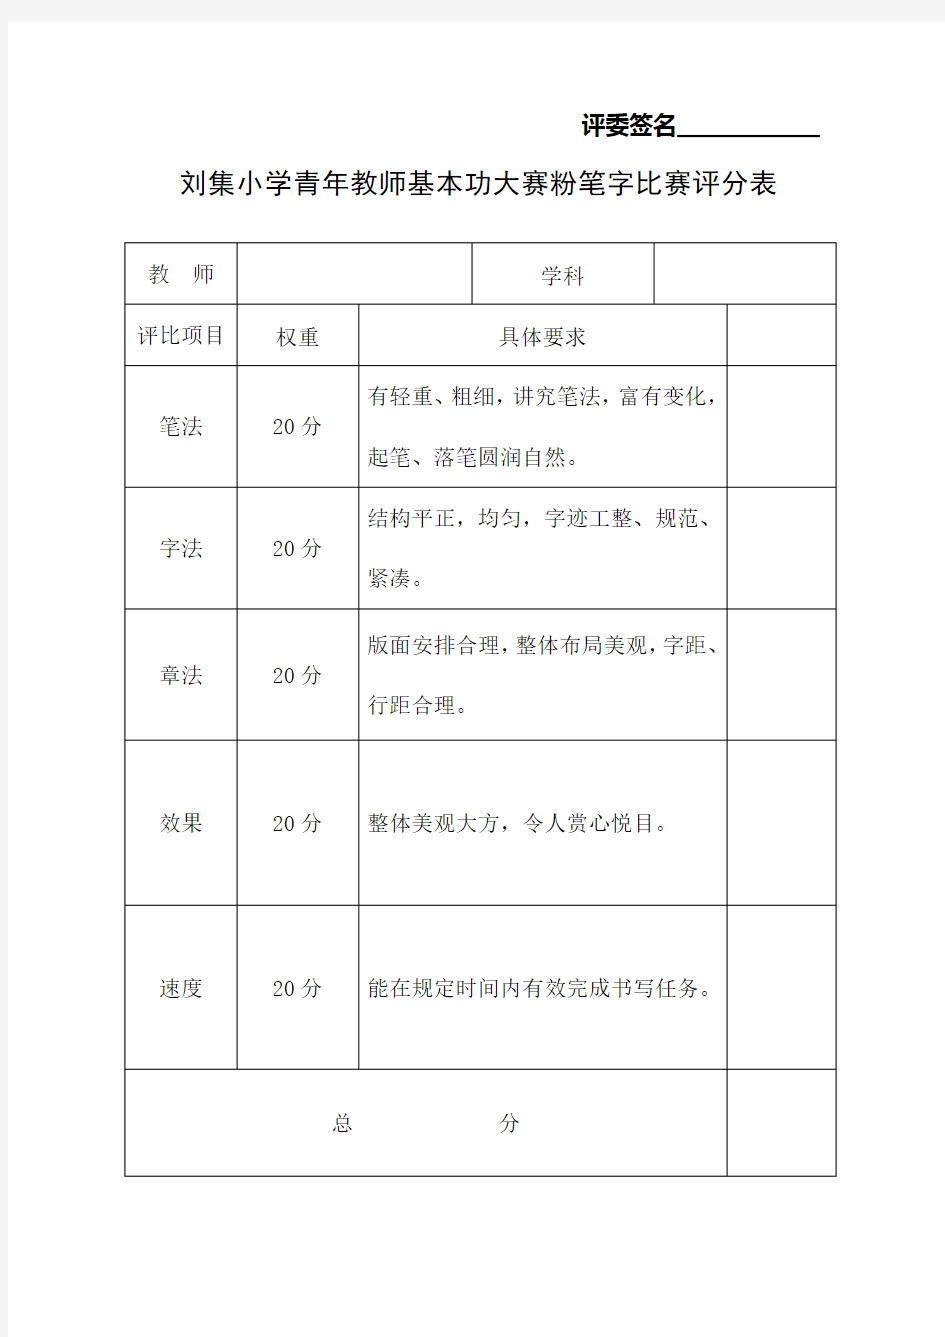 刘集小学青年教师基本功大赛粉笔字比赛评分表